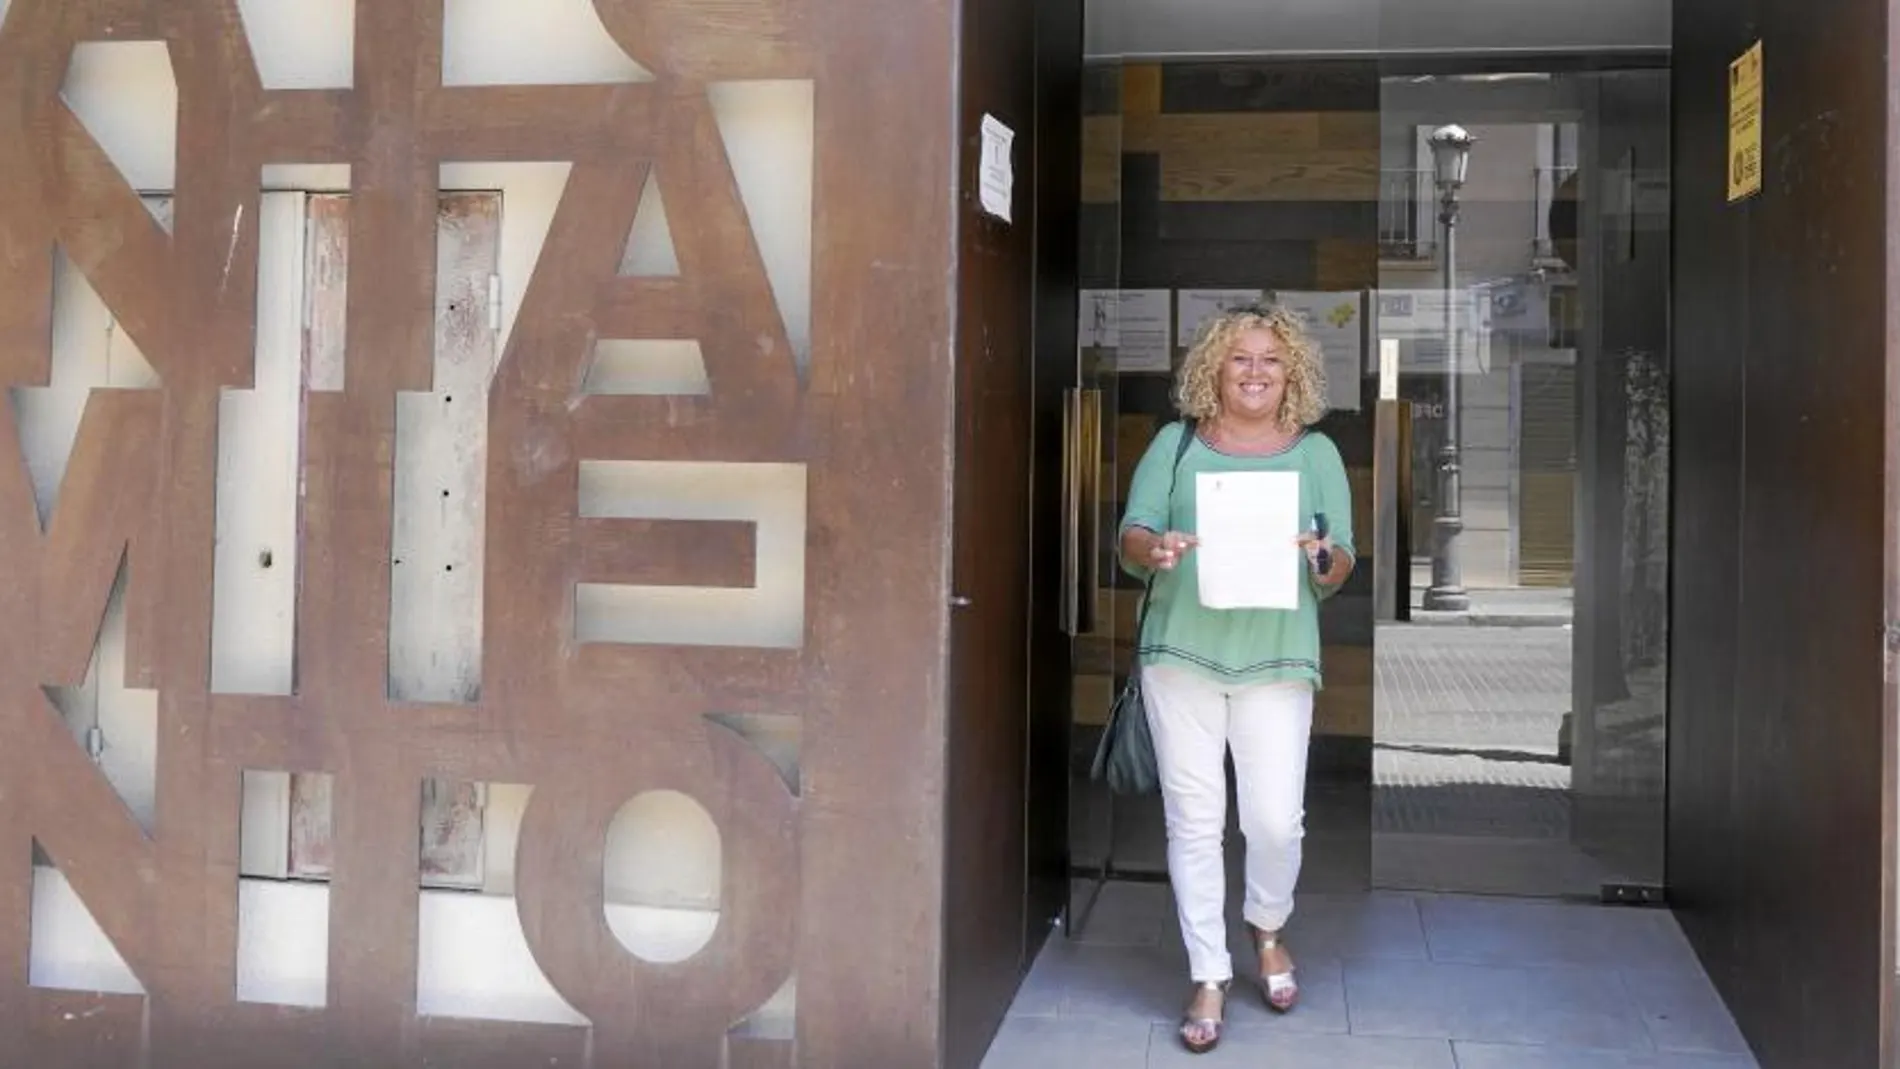 La ex alcaldesa, Cristina Moreno (PSOE), presentó ayer en el registro del Ayuntamiento de Aranjuez su dimisión